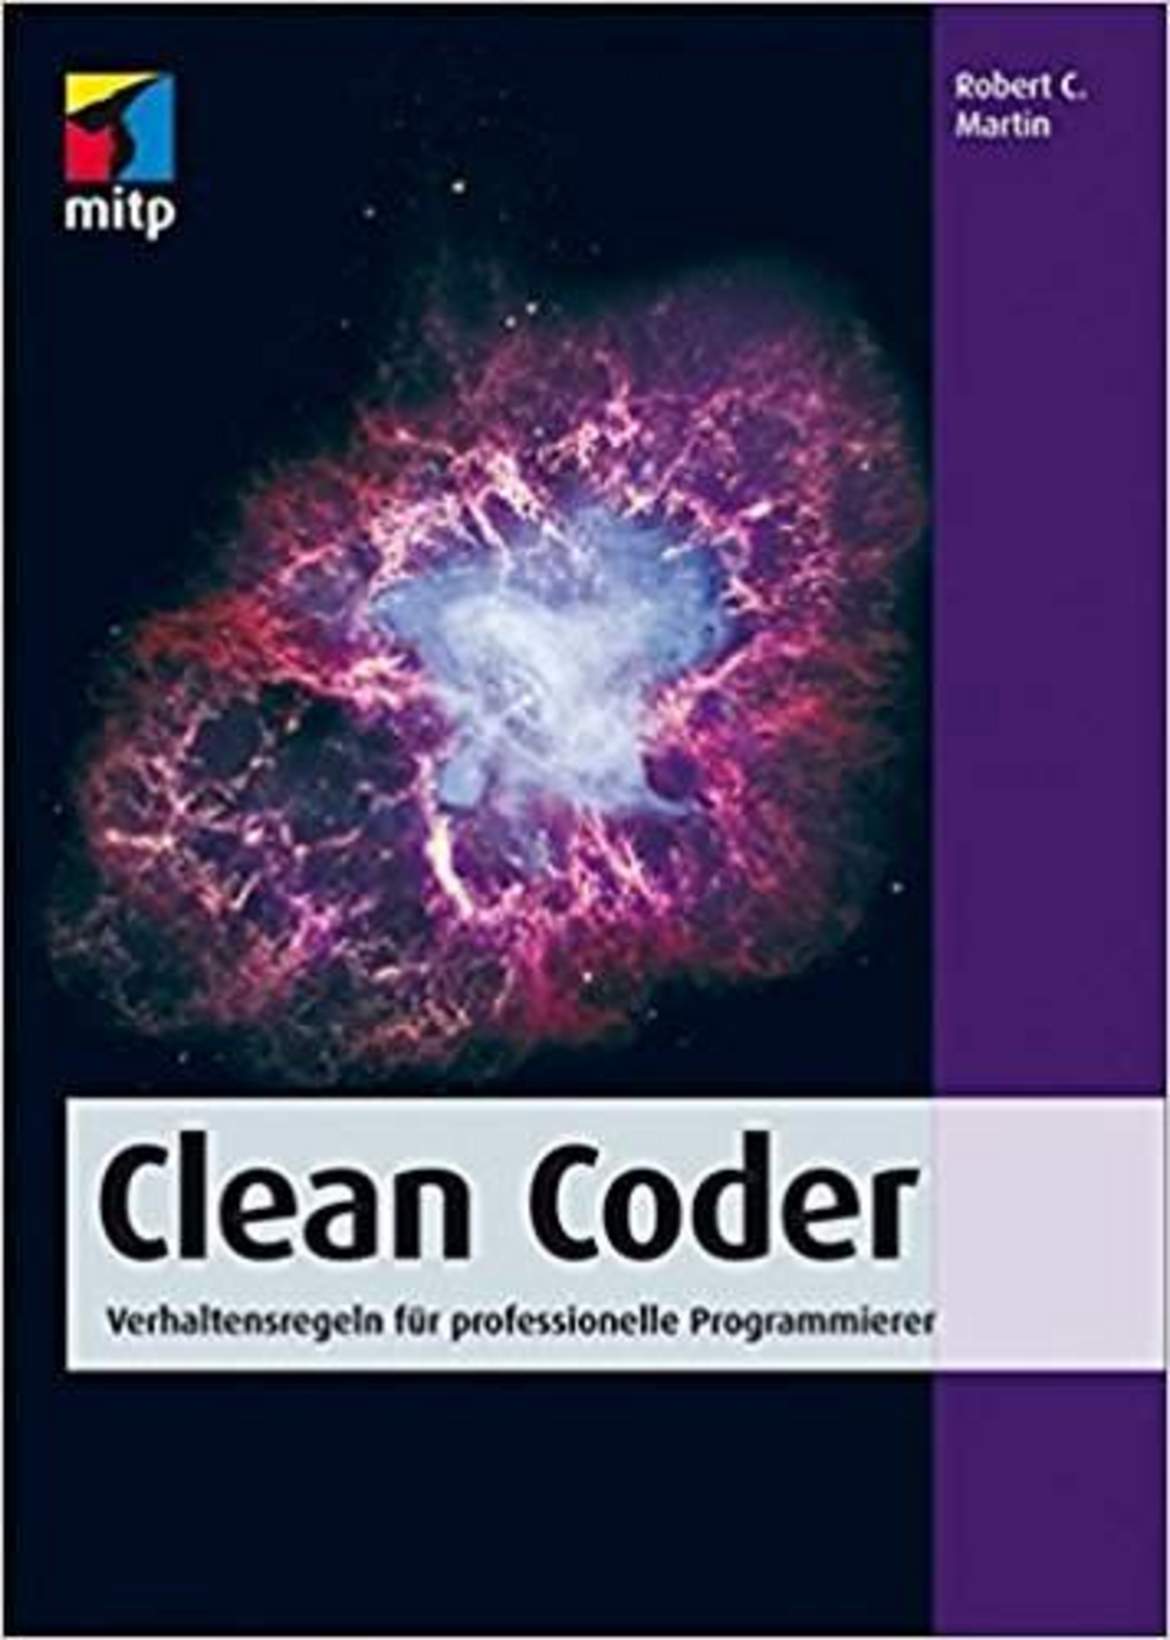 Clean Coder: Verhaltensregeln für professionelle Programmierer